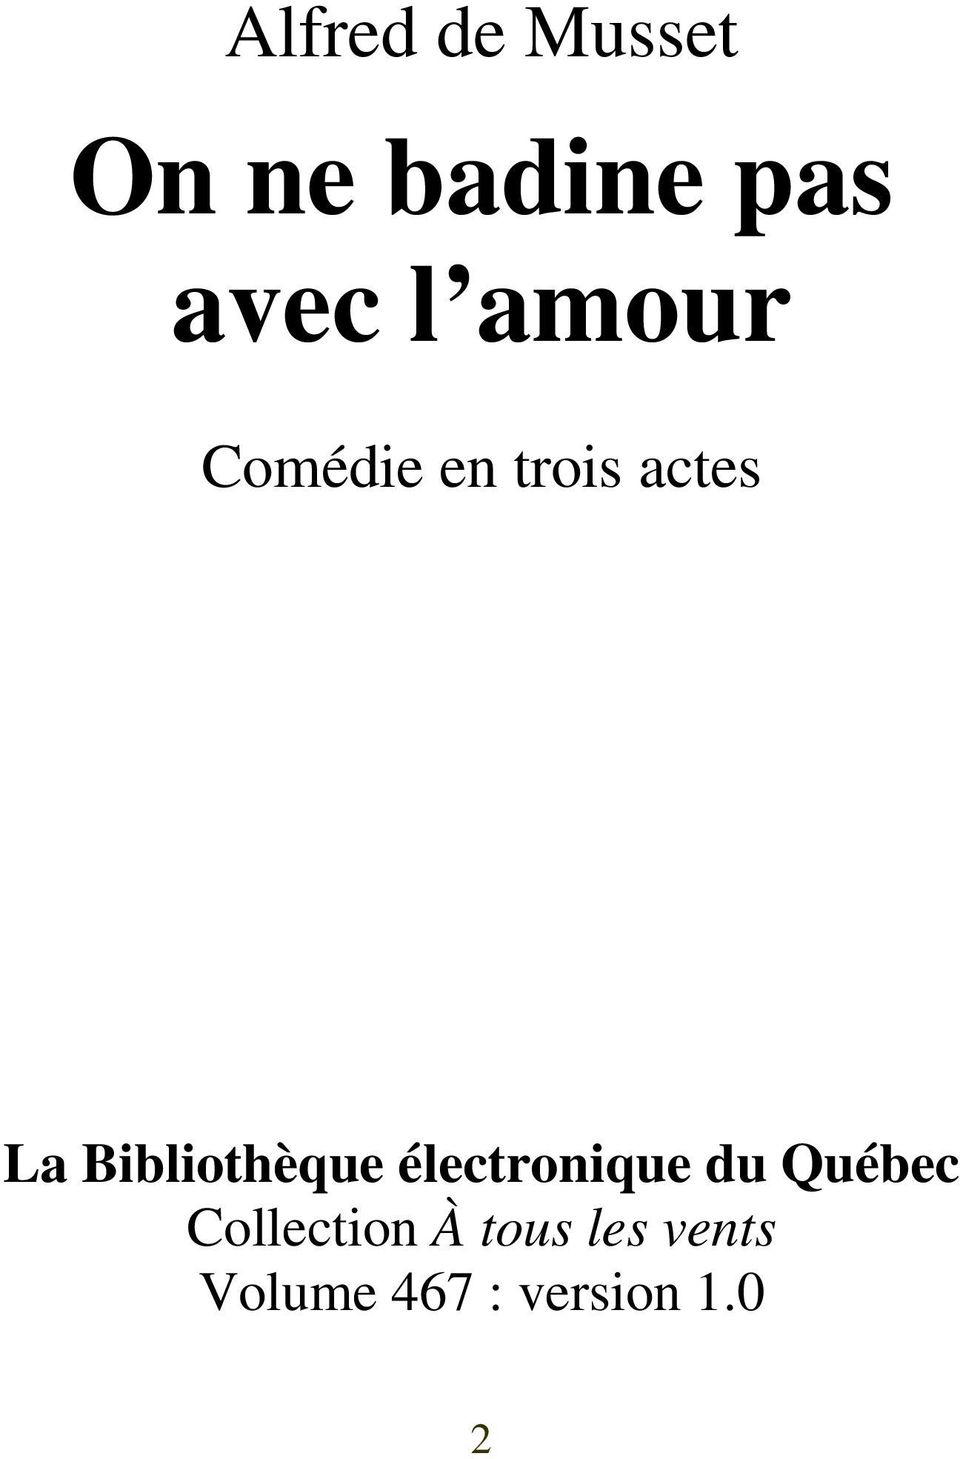 Bibliothèque électronique du Québec